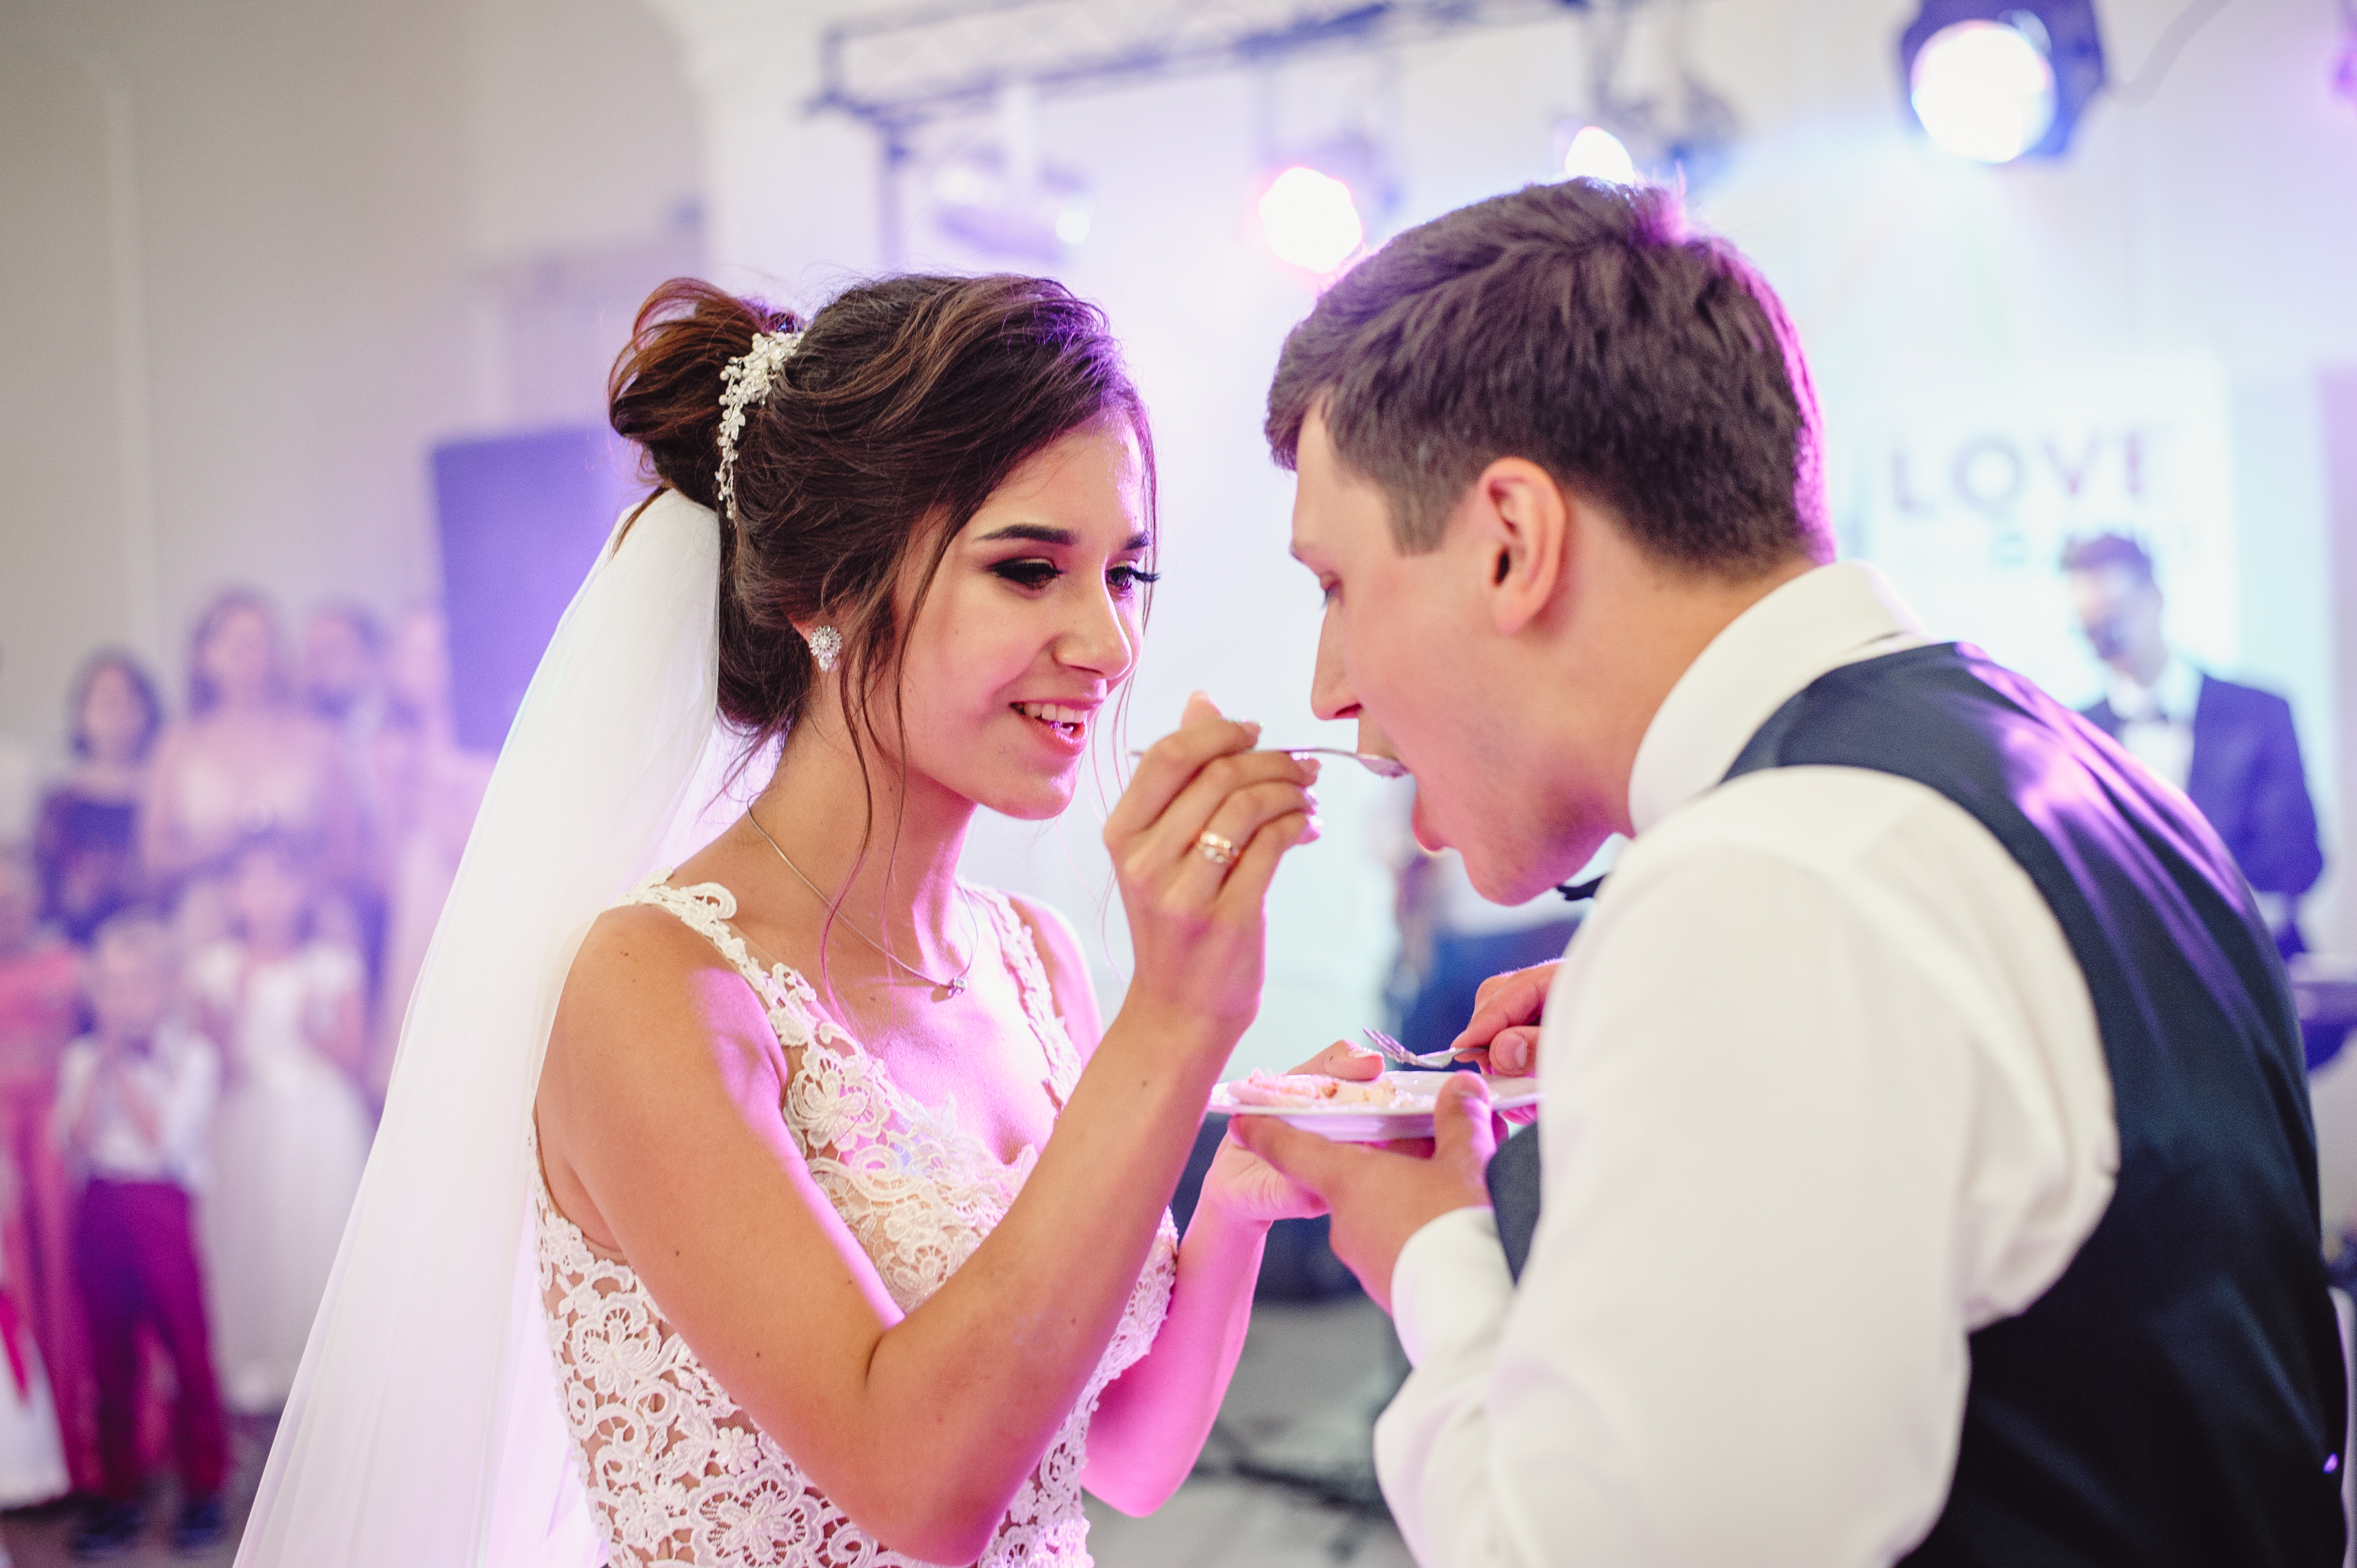 Una novia dando de comer un trozo de pastel a su novio | Fuente: Shutterstock